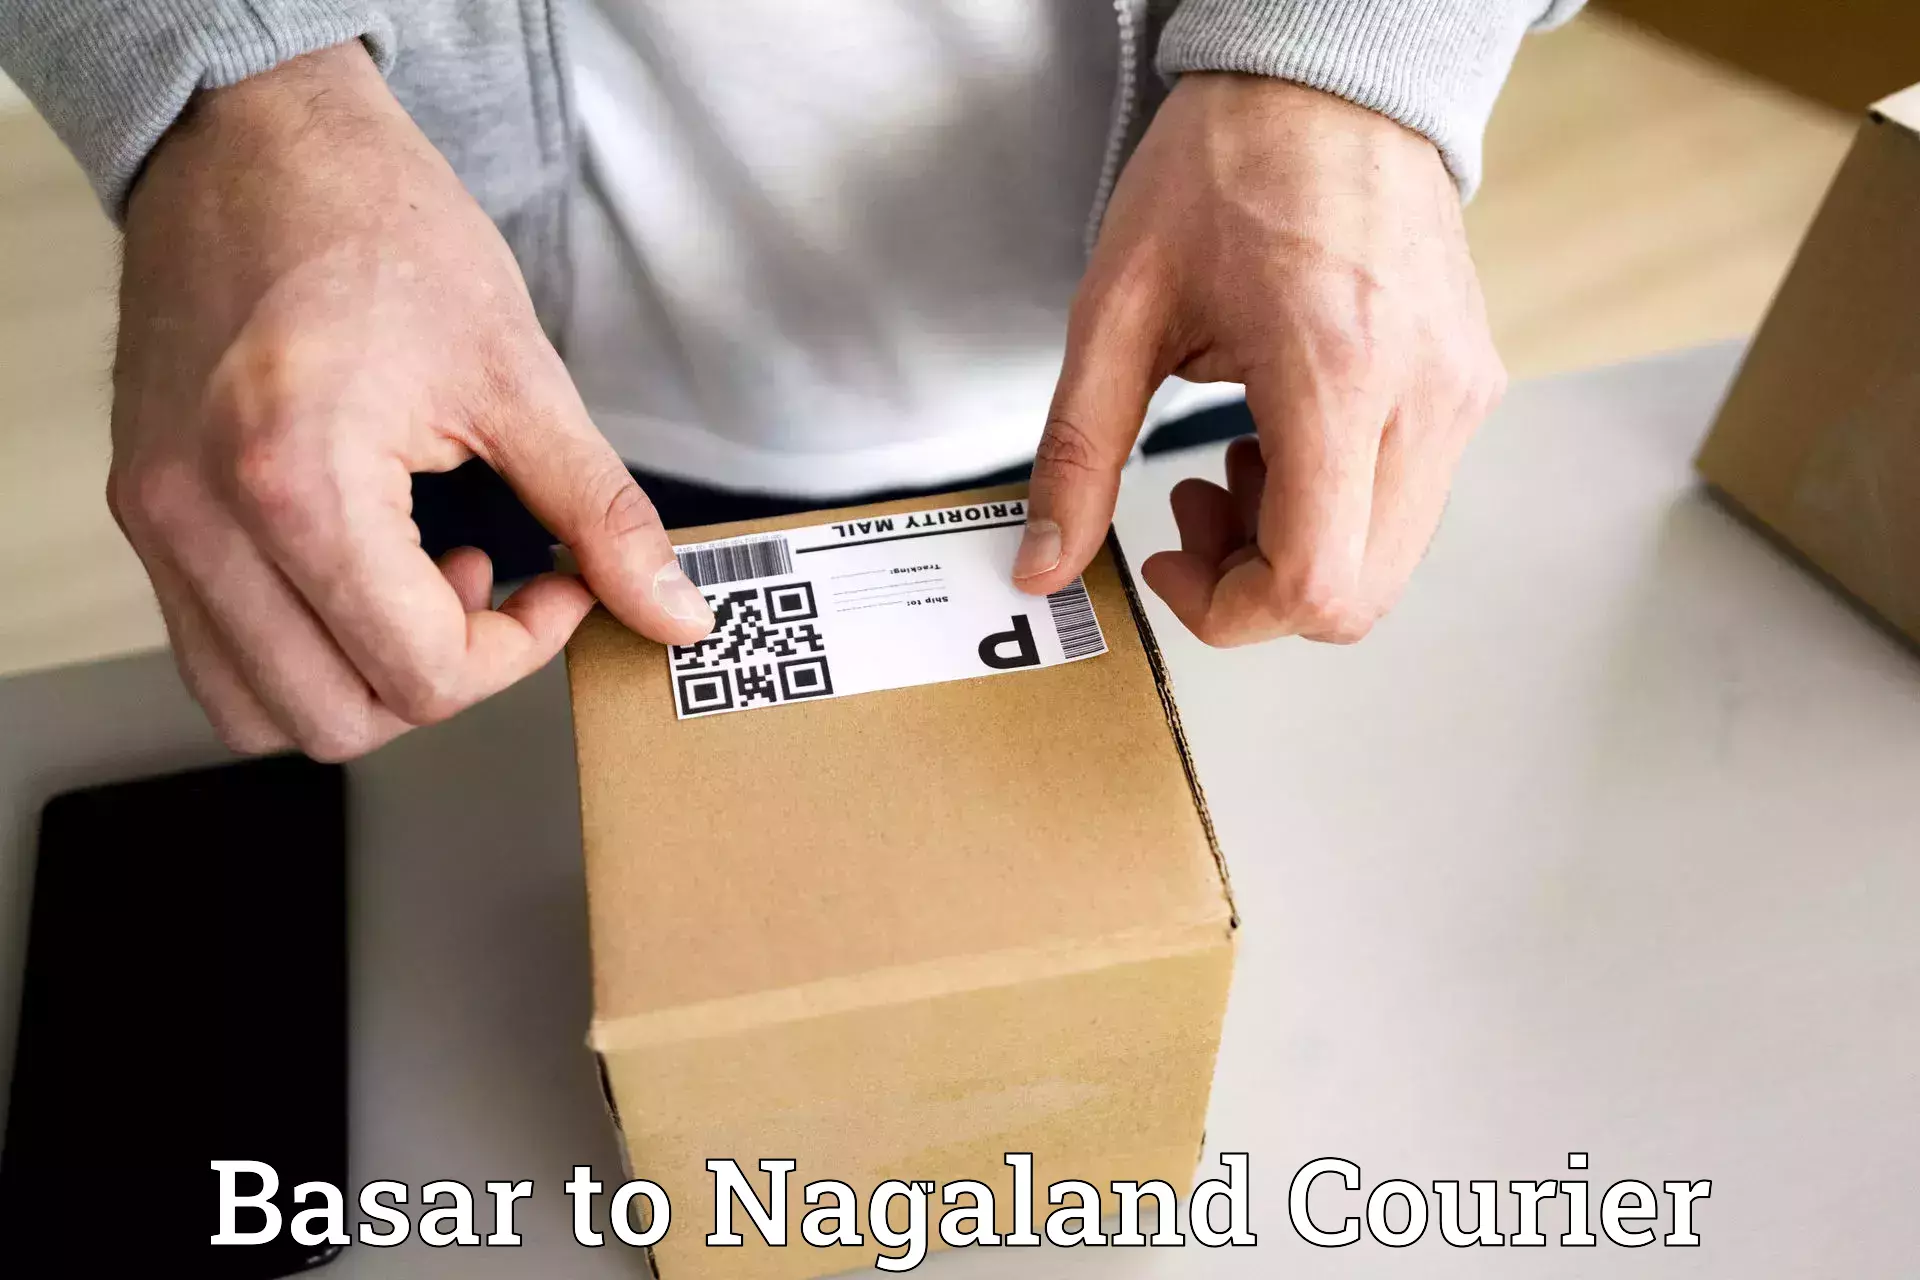 Seamless shipping experience Basar to NIT Nagaland